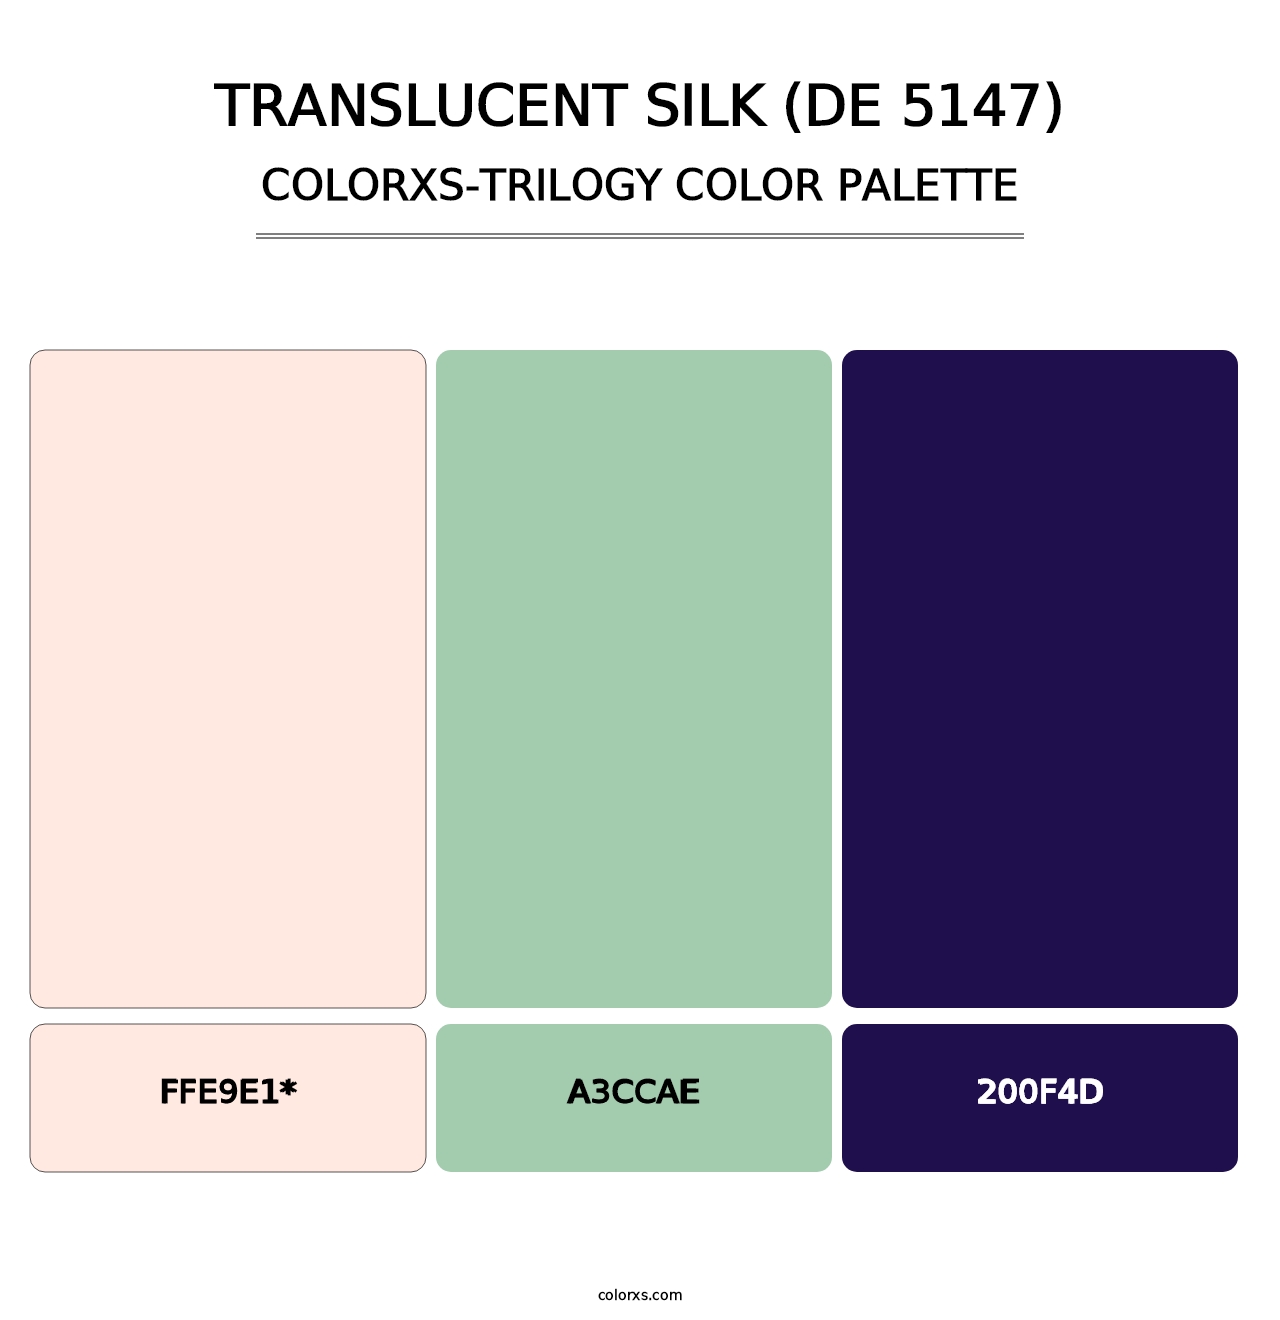 Translucent Silk (DE 5147) - Colorxs Trilogy Palette